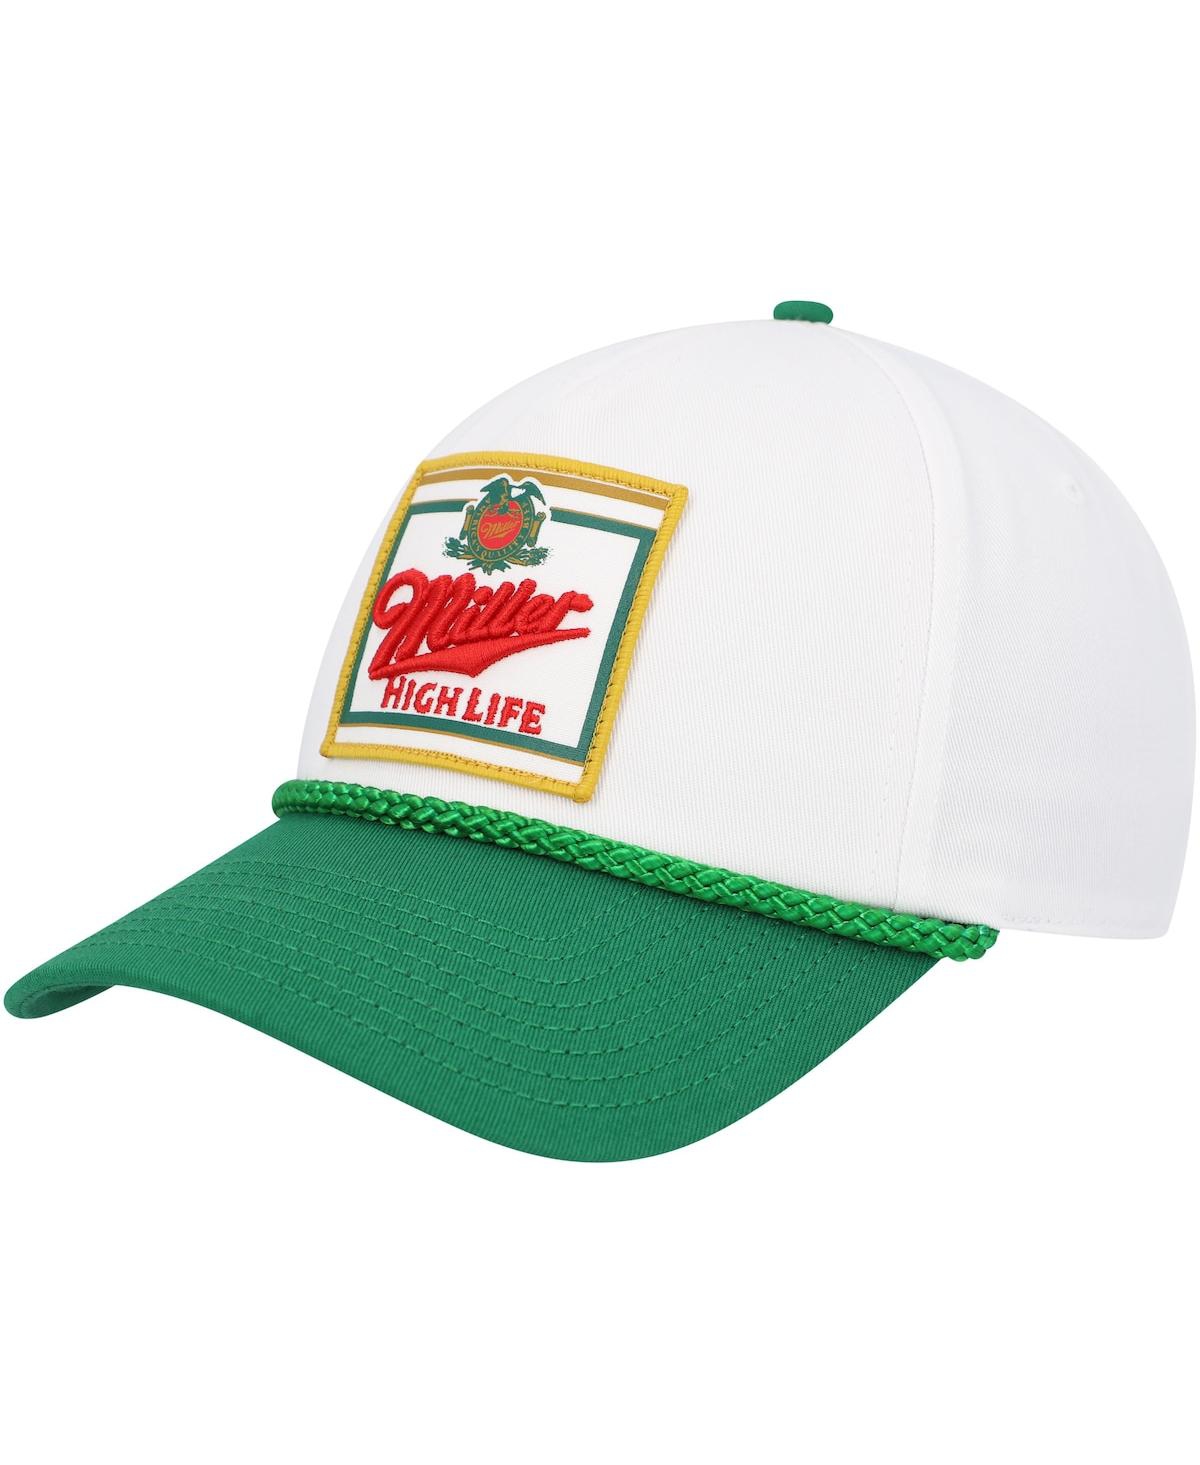 Men's American Needle White, Green Miller Roscoe Adjustable Hat - White, Green